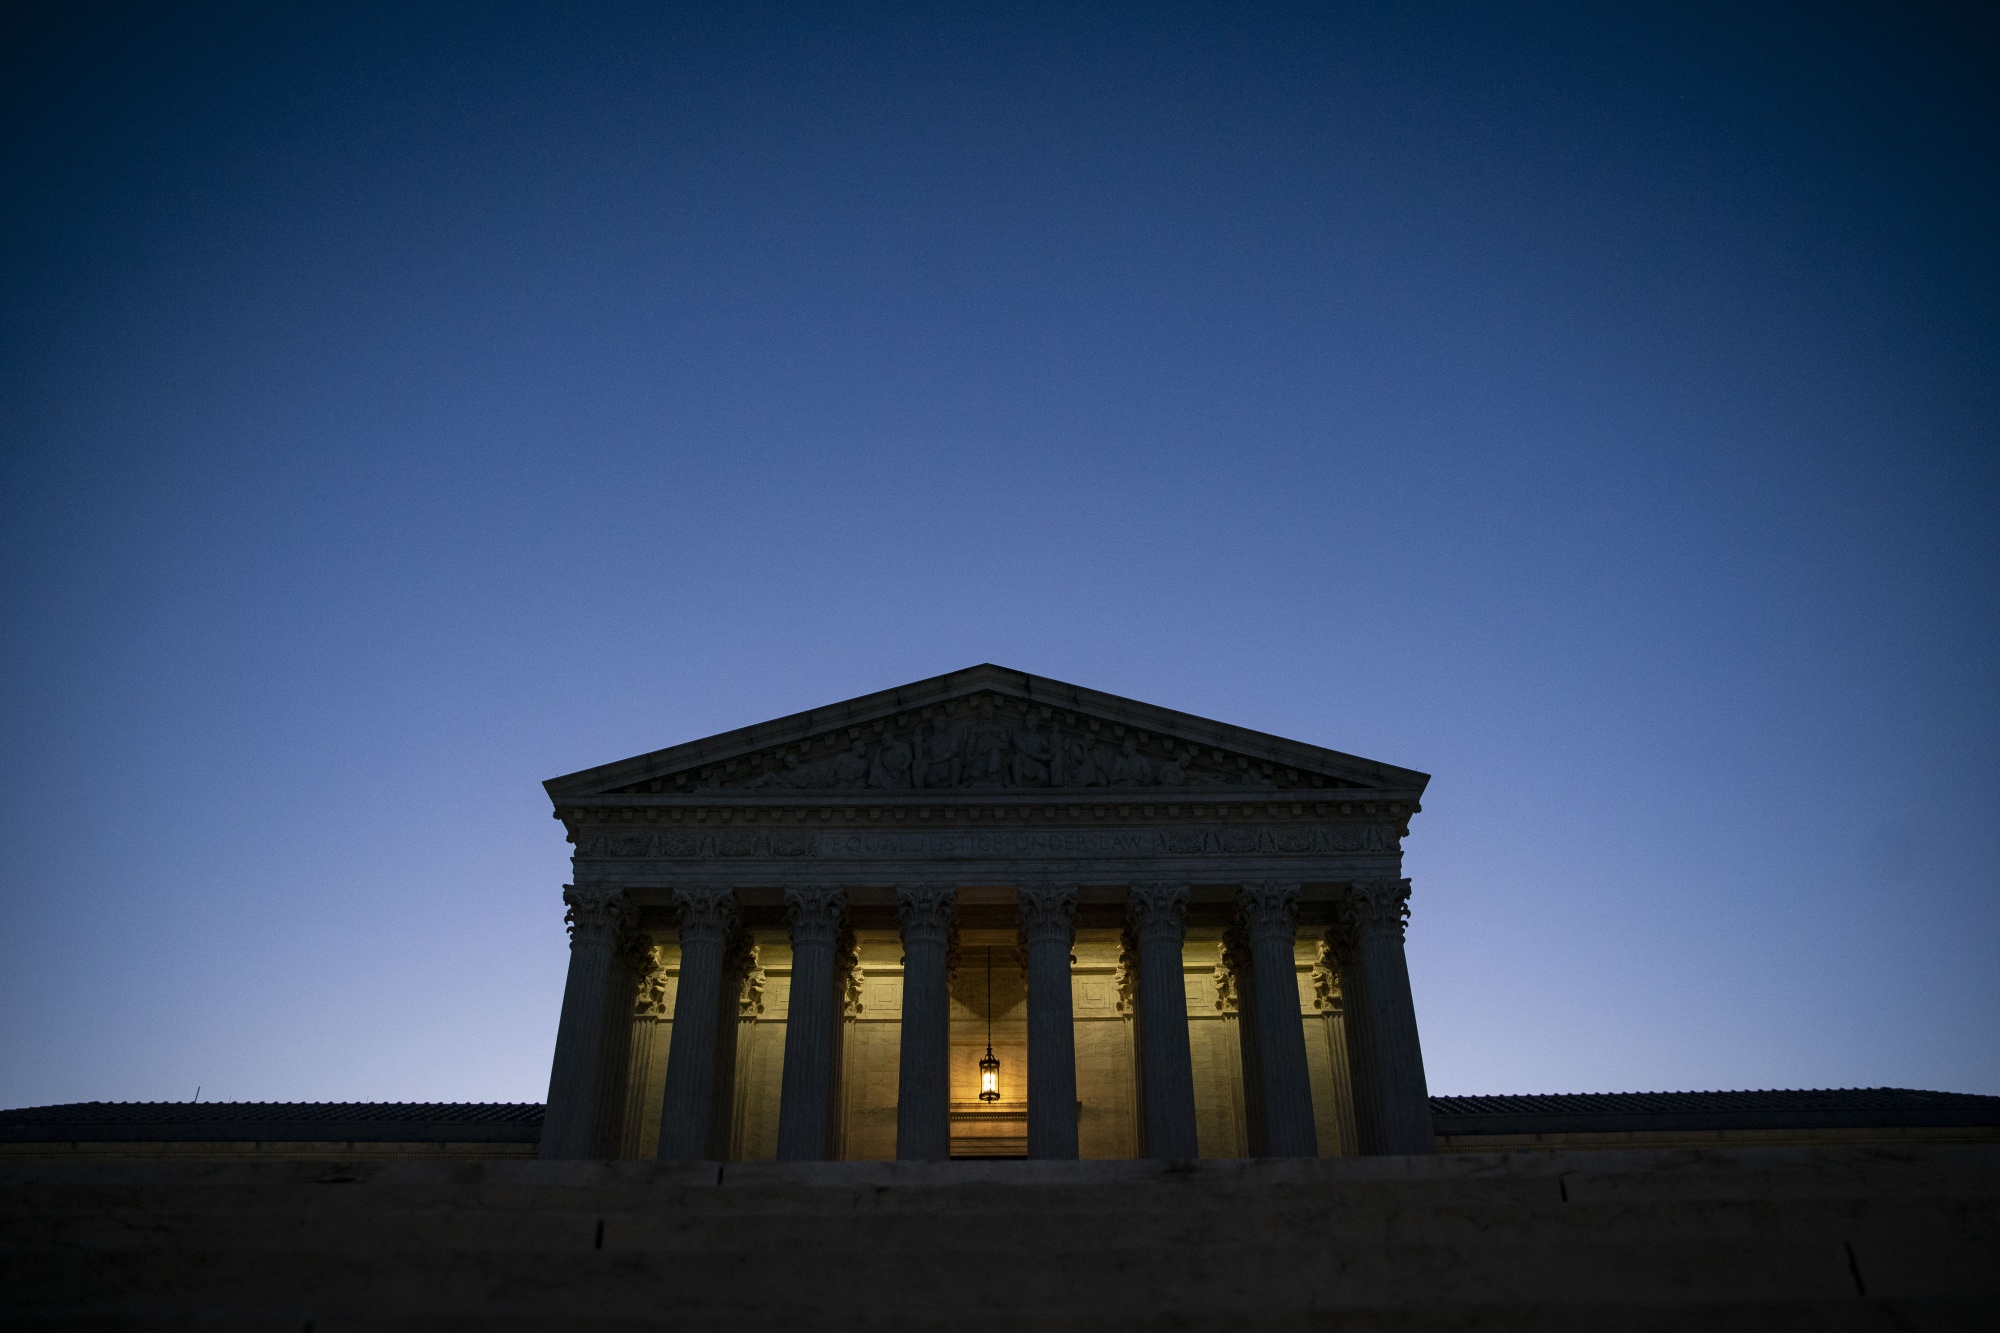 The U.S. Supreme Court in Washington